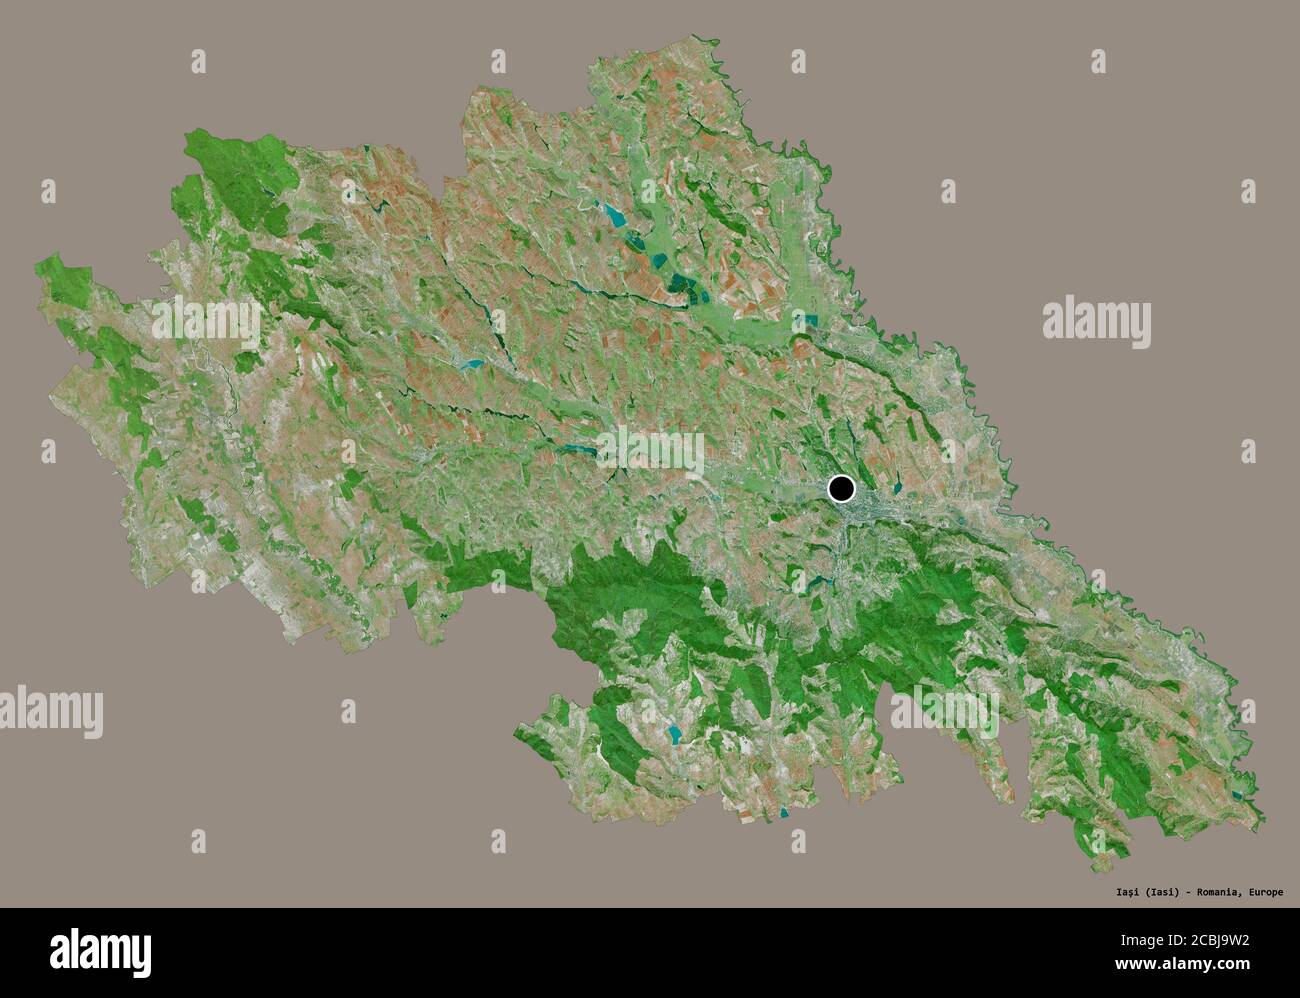 Forme de Iași, comté de Roumanie, avec sa capitale isolée sur un fond de couleur unie. Imagerie satellite. Rendu 3D Banque D'Images